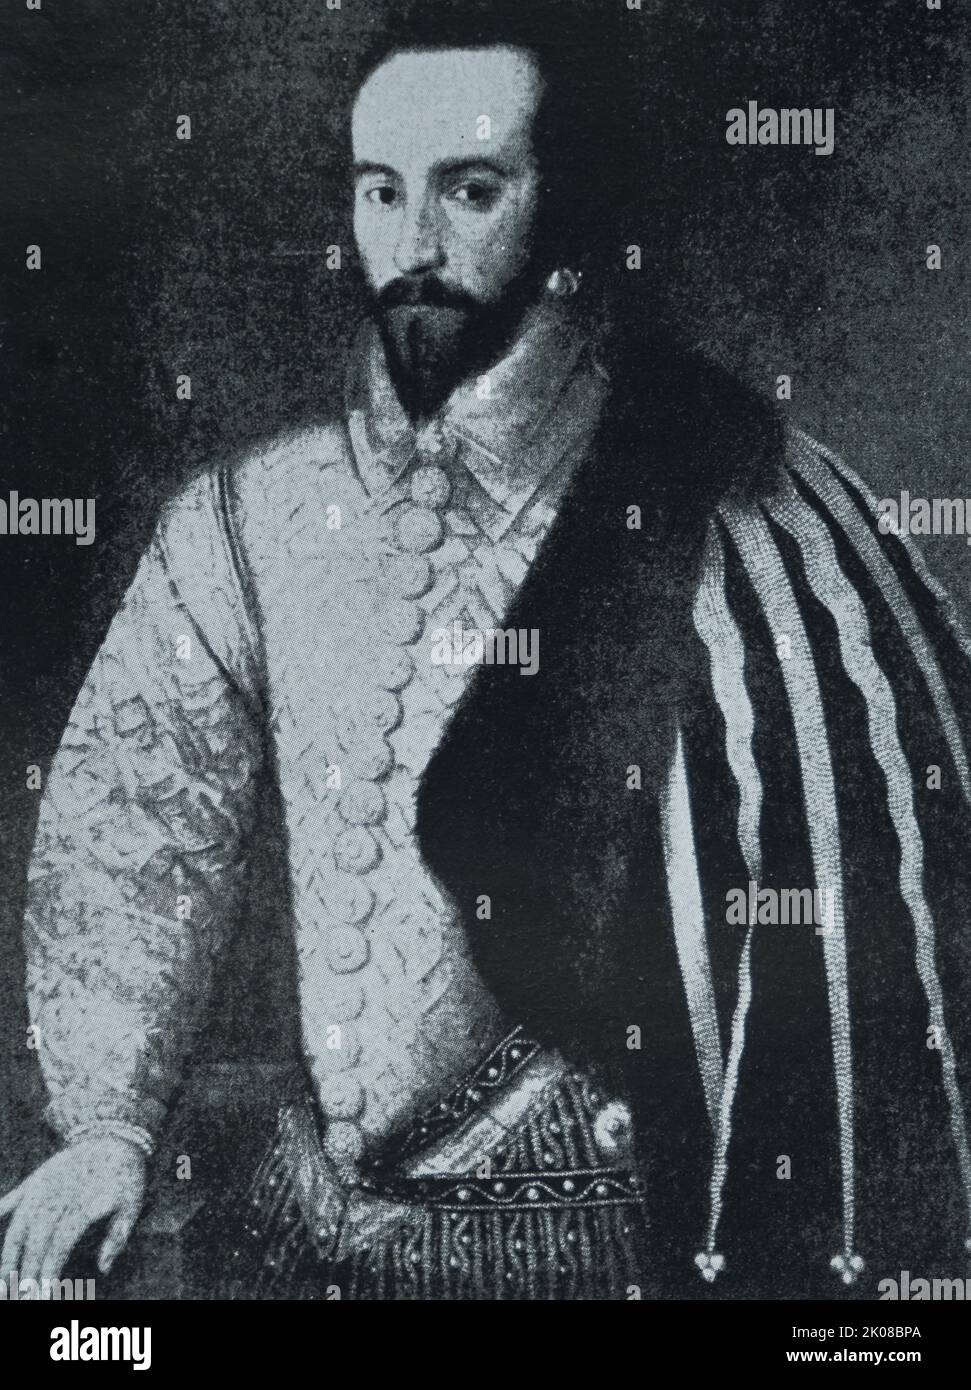 Sir Walter Raleigh (c. 1552. - 29. Oktober 1618), auch geschrieben Ralegh, war ein englischer Staatsmann, Soldat, Schriftsteller, Entdecker und ein beliebter Höfling der englischen Königin Elizabeth I. Stockfoto